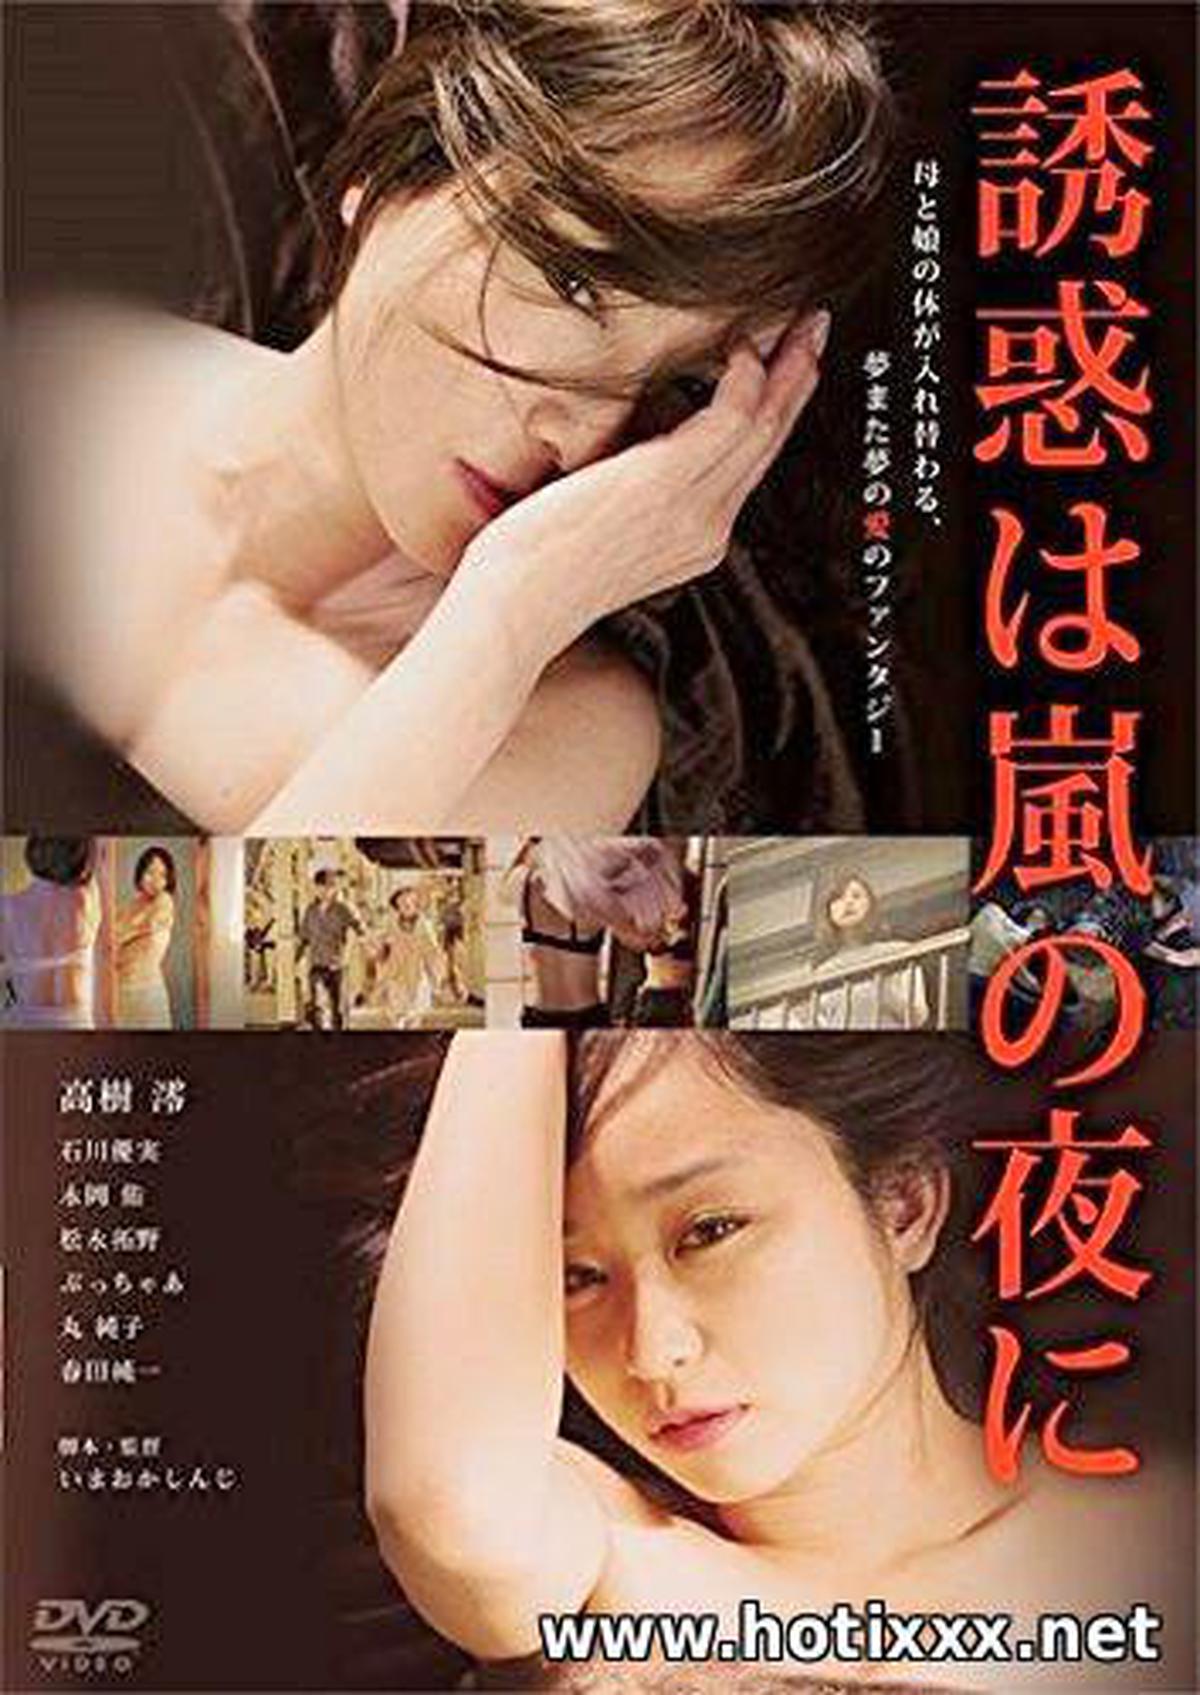 誘惑は嵐の夜に / Yuwaku ha arashi no yoru ni / สิ่งล่อใจมาในคืนพายุ (2016)